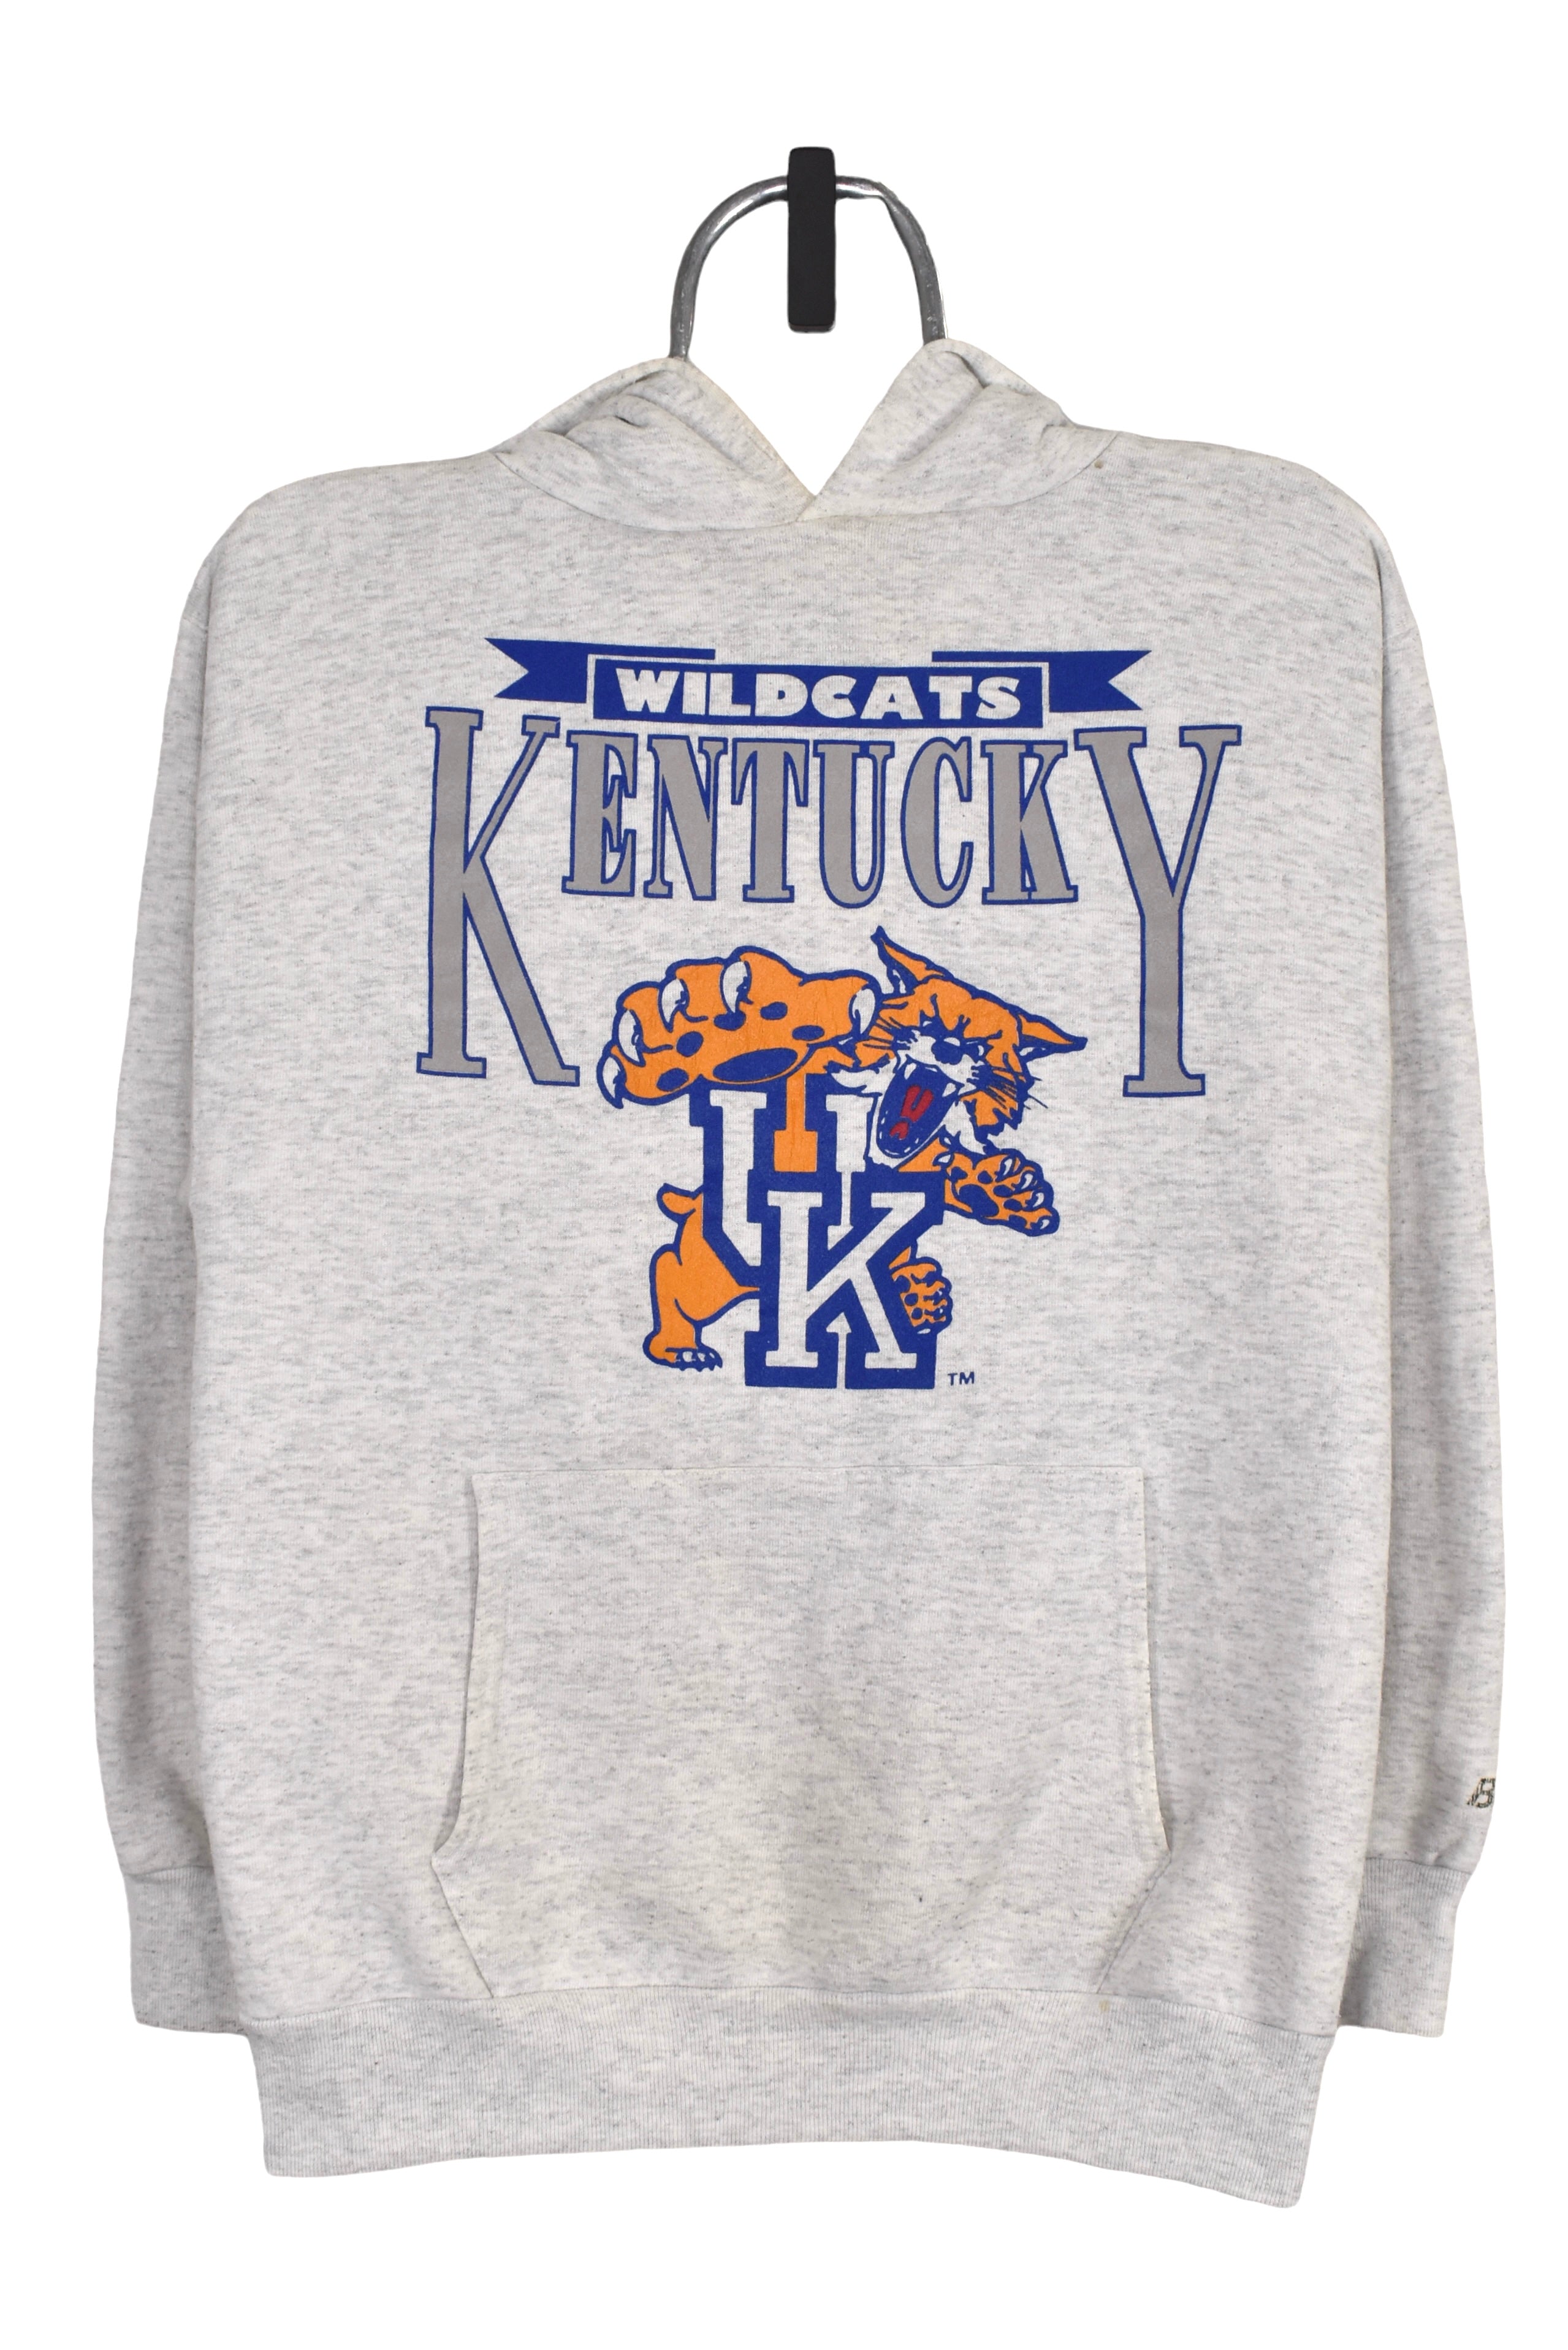 Vintage University of Kentucky hoodie (S), grey Wildcats sweatshirt